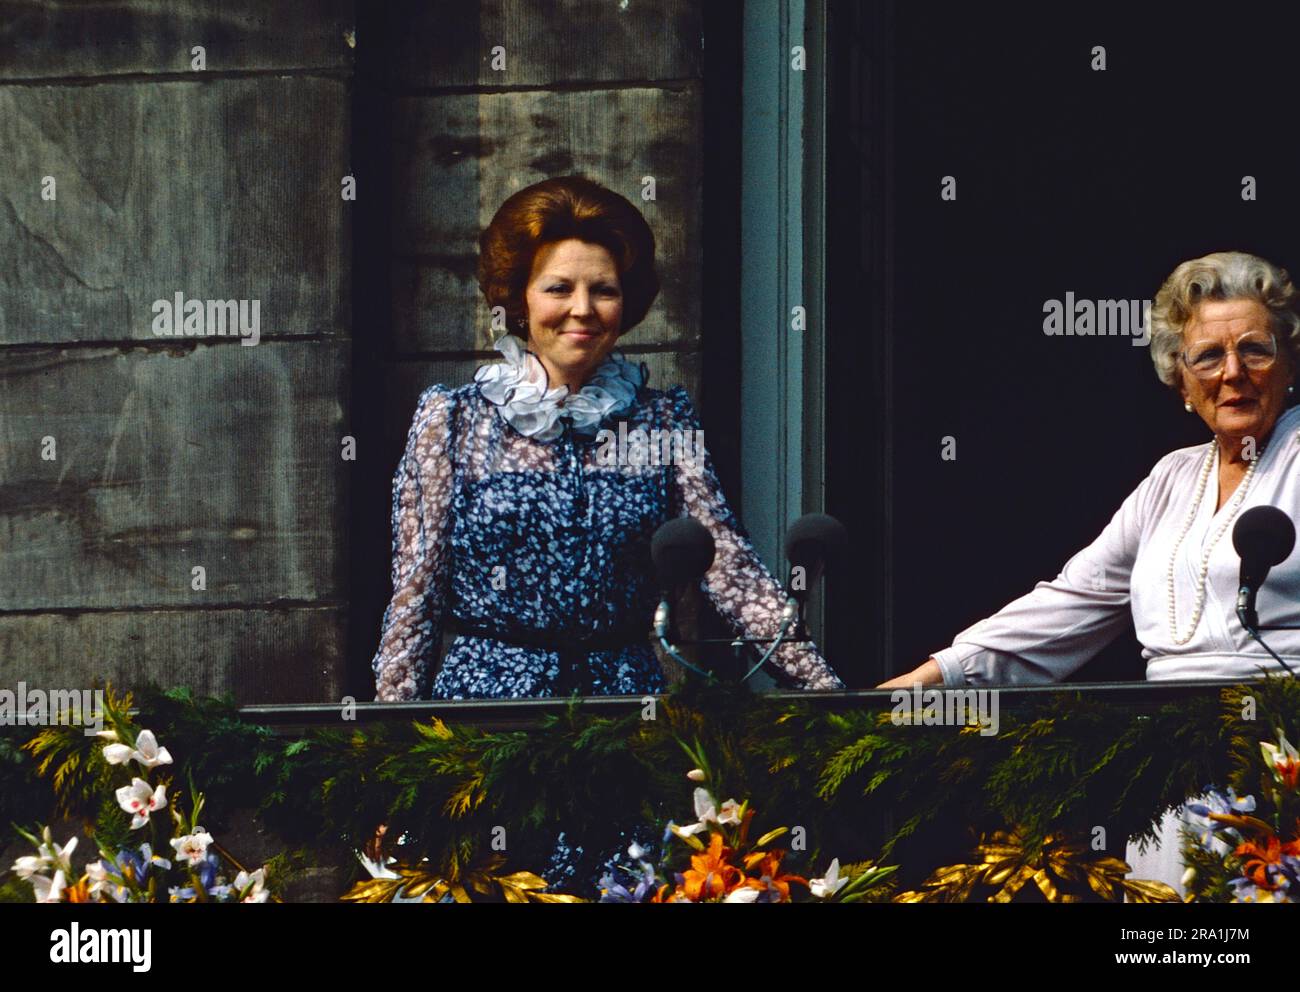 Koninginnedag, 30. Aprile 1980, Königin Beatrix mit ihrer Mutter, Ex-Königin Juliana der Niederlande auf dem Balkon im Palais auf dem Dam, Paleis op de Dam, Amsterdam. Foto Stock